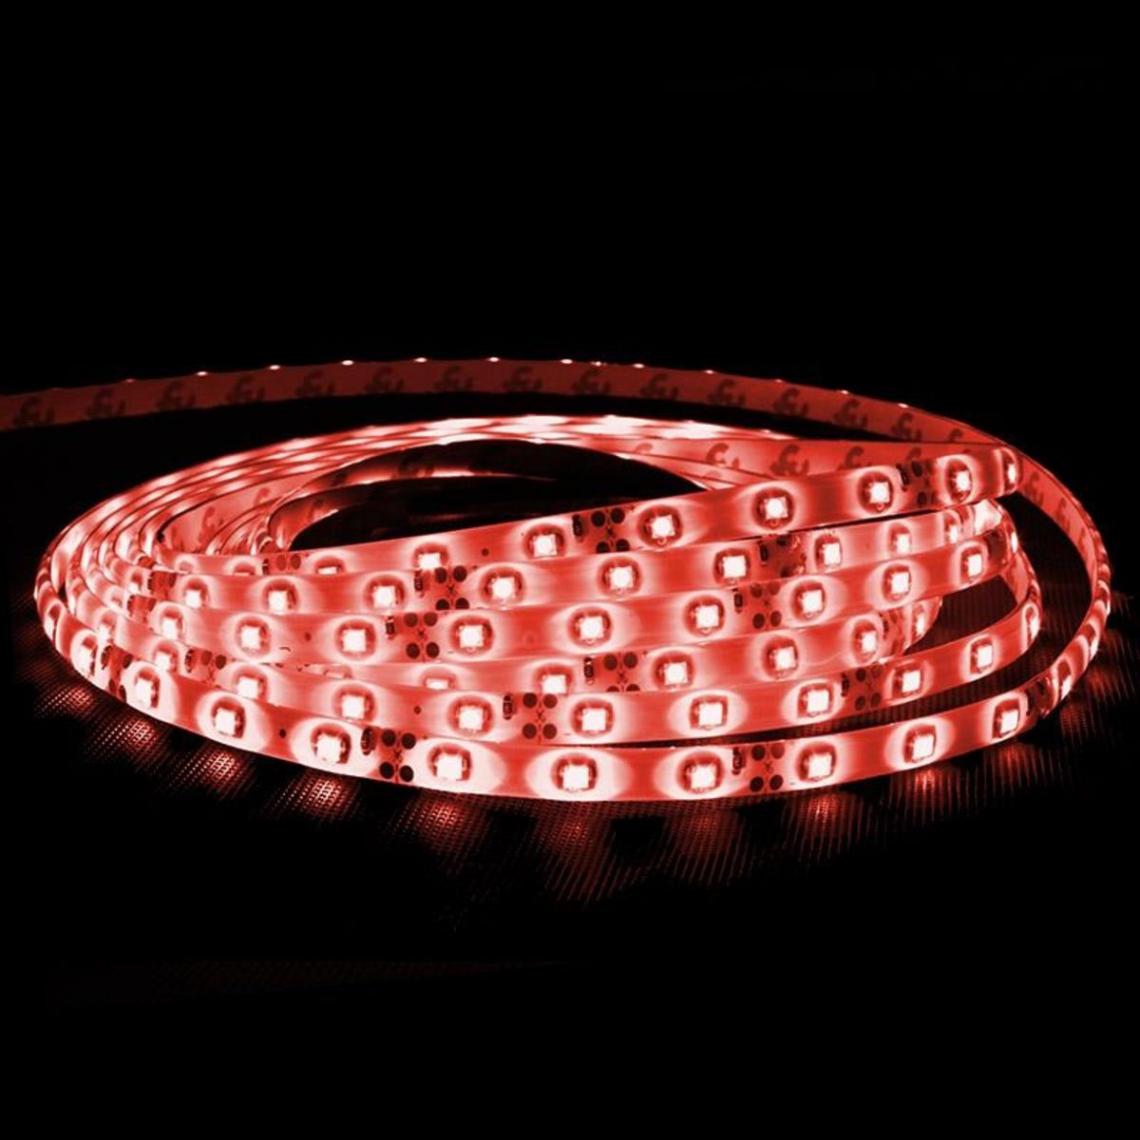 Ecd Germany - ECD Germany 25m (5x5m) Bande lumineuse ruban LED SMD 3528 - rouge - 60 LED / m - étanche - bande éclairante imperméable efficacité énergétique A - Ruban LED